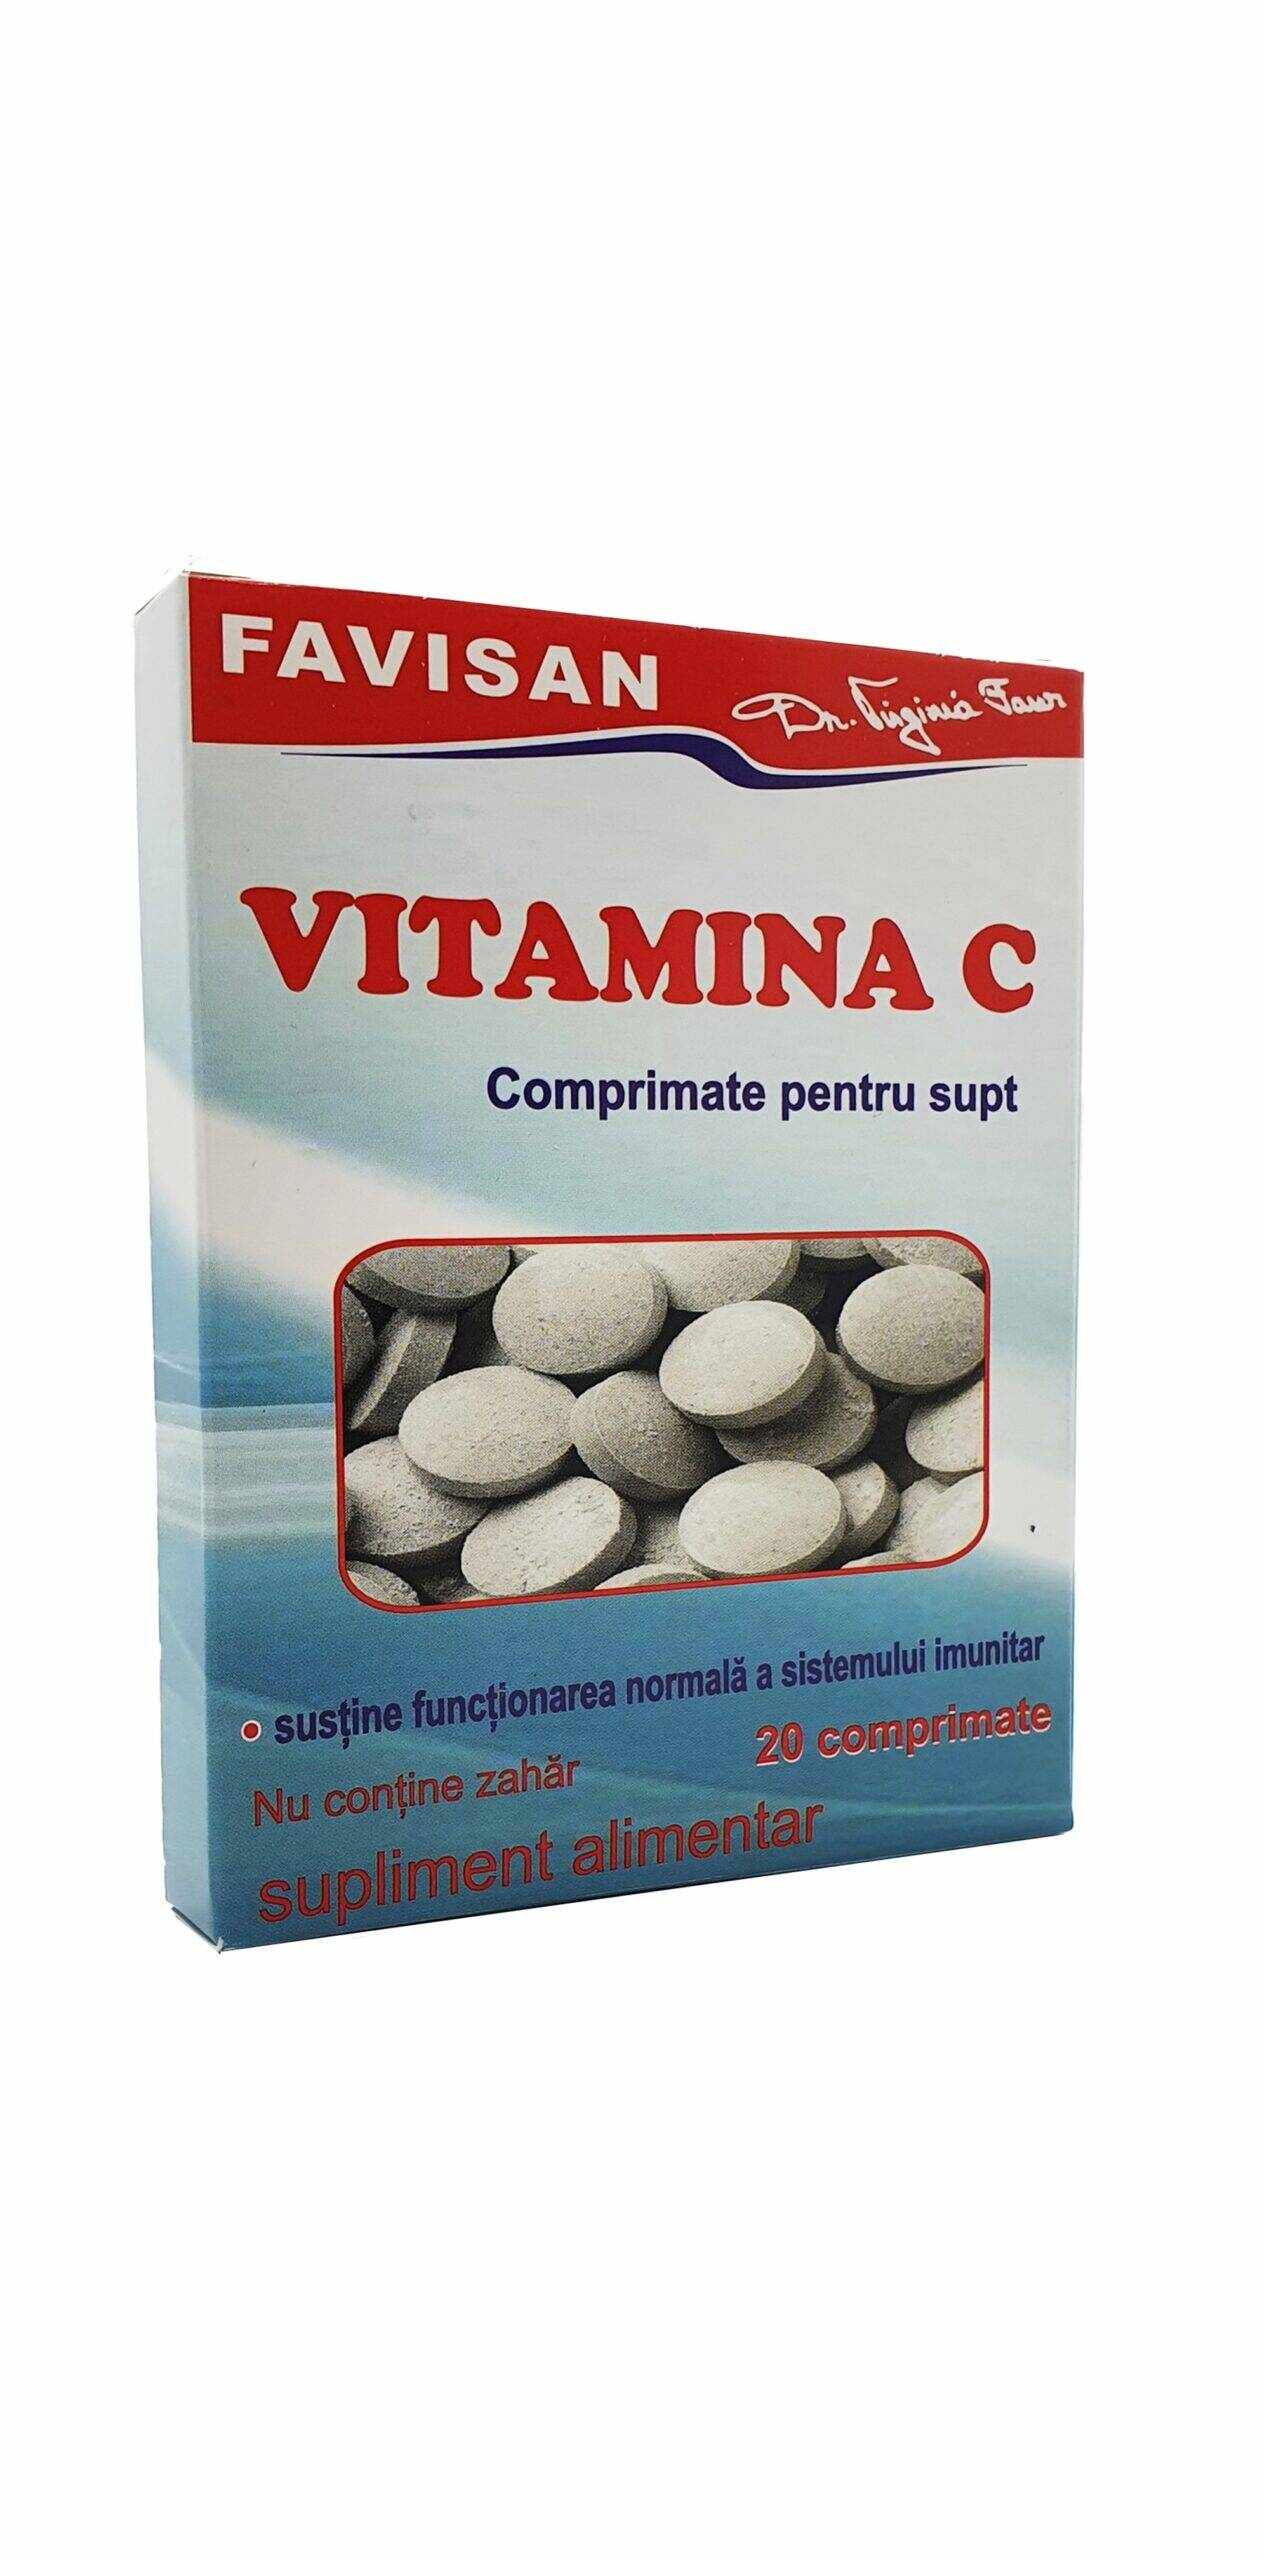 Vitamina C, comprimate pentru supt, 20 comprimate, Favisan